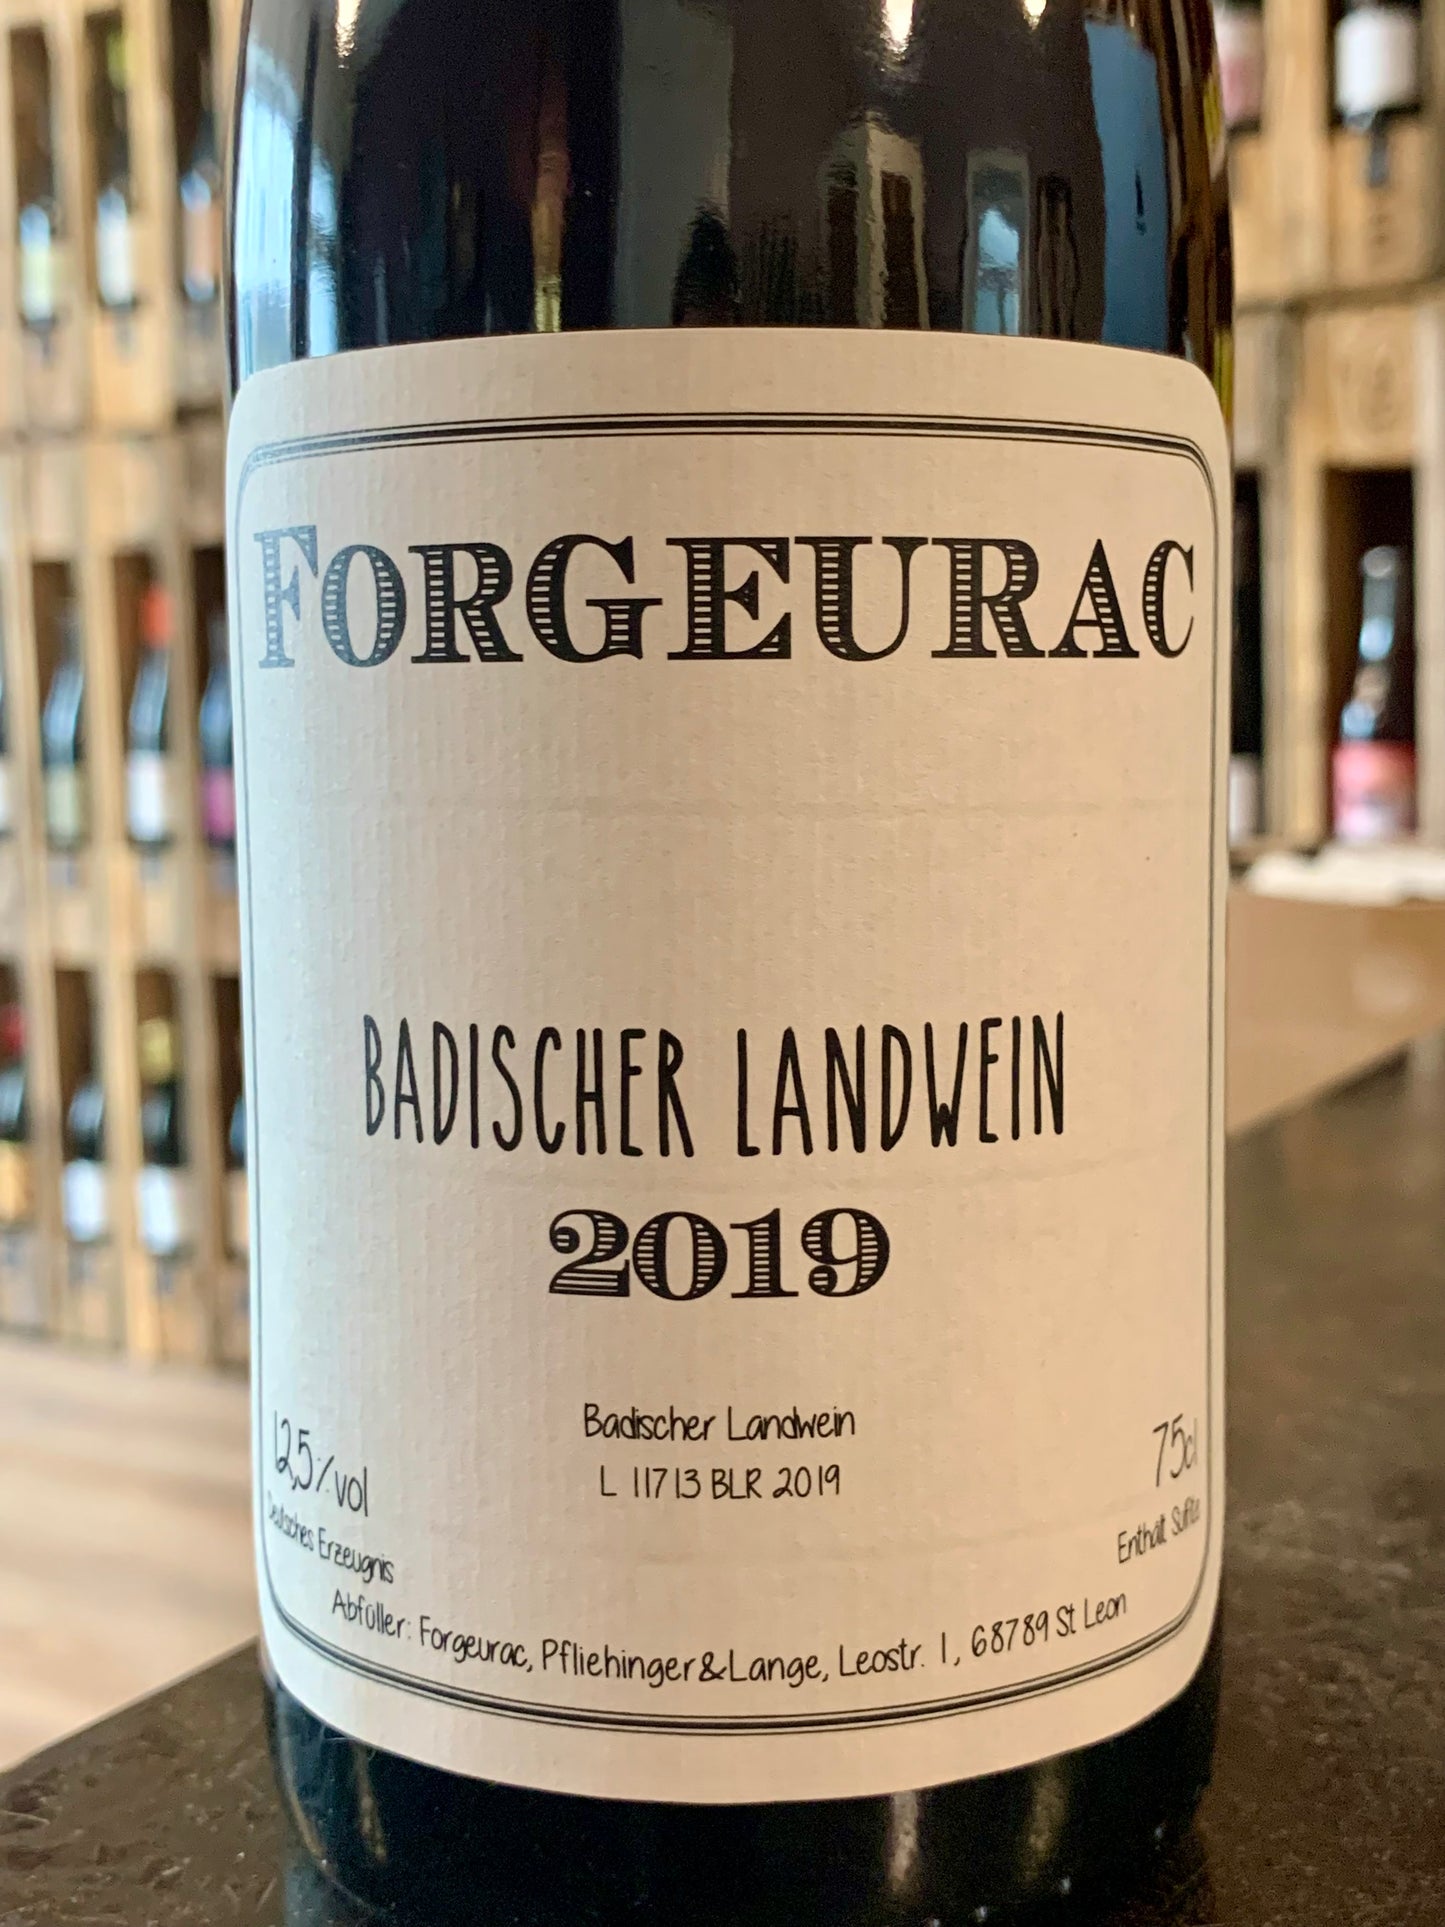 Forgeurac Badischer Landwein 2019